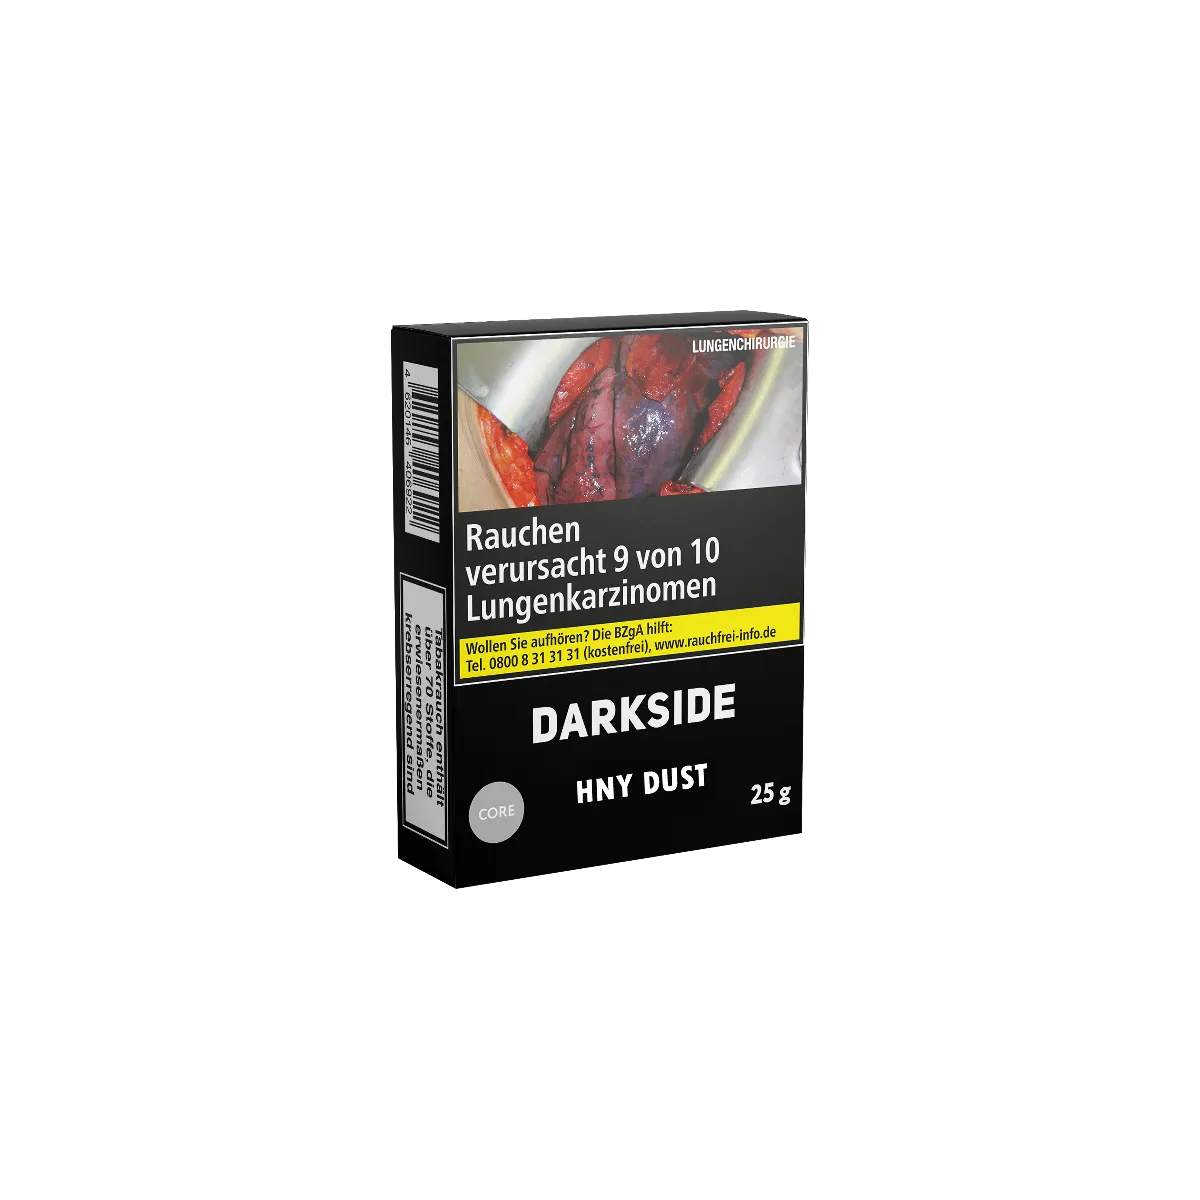 Darkside Core Hny Dust 25g Shishatabak Online bestellen